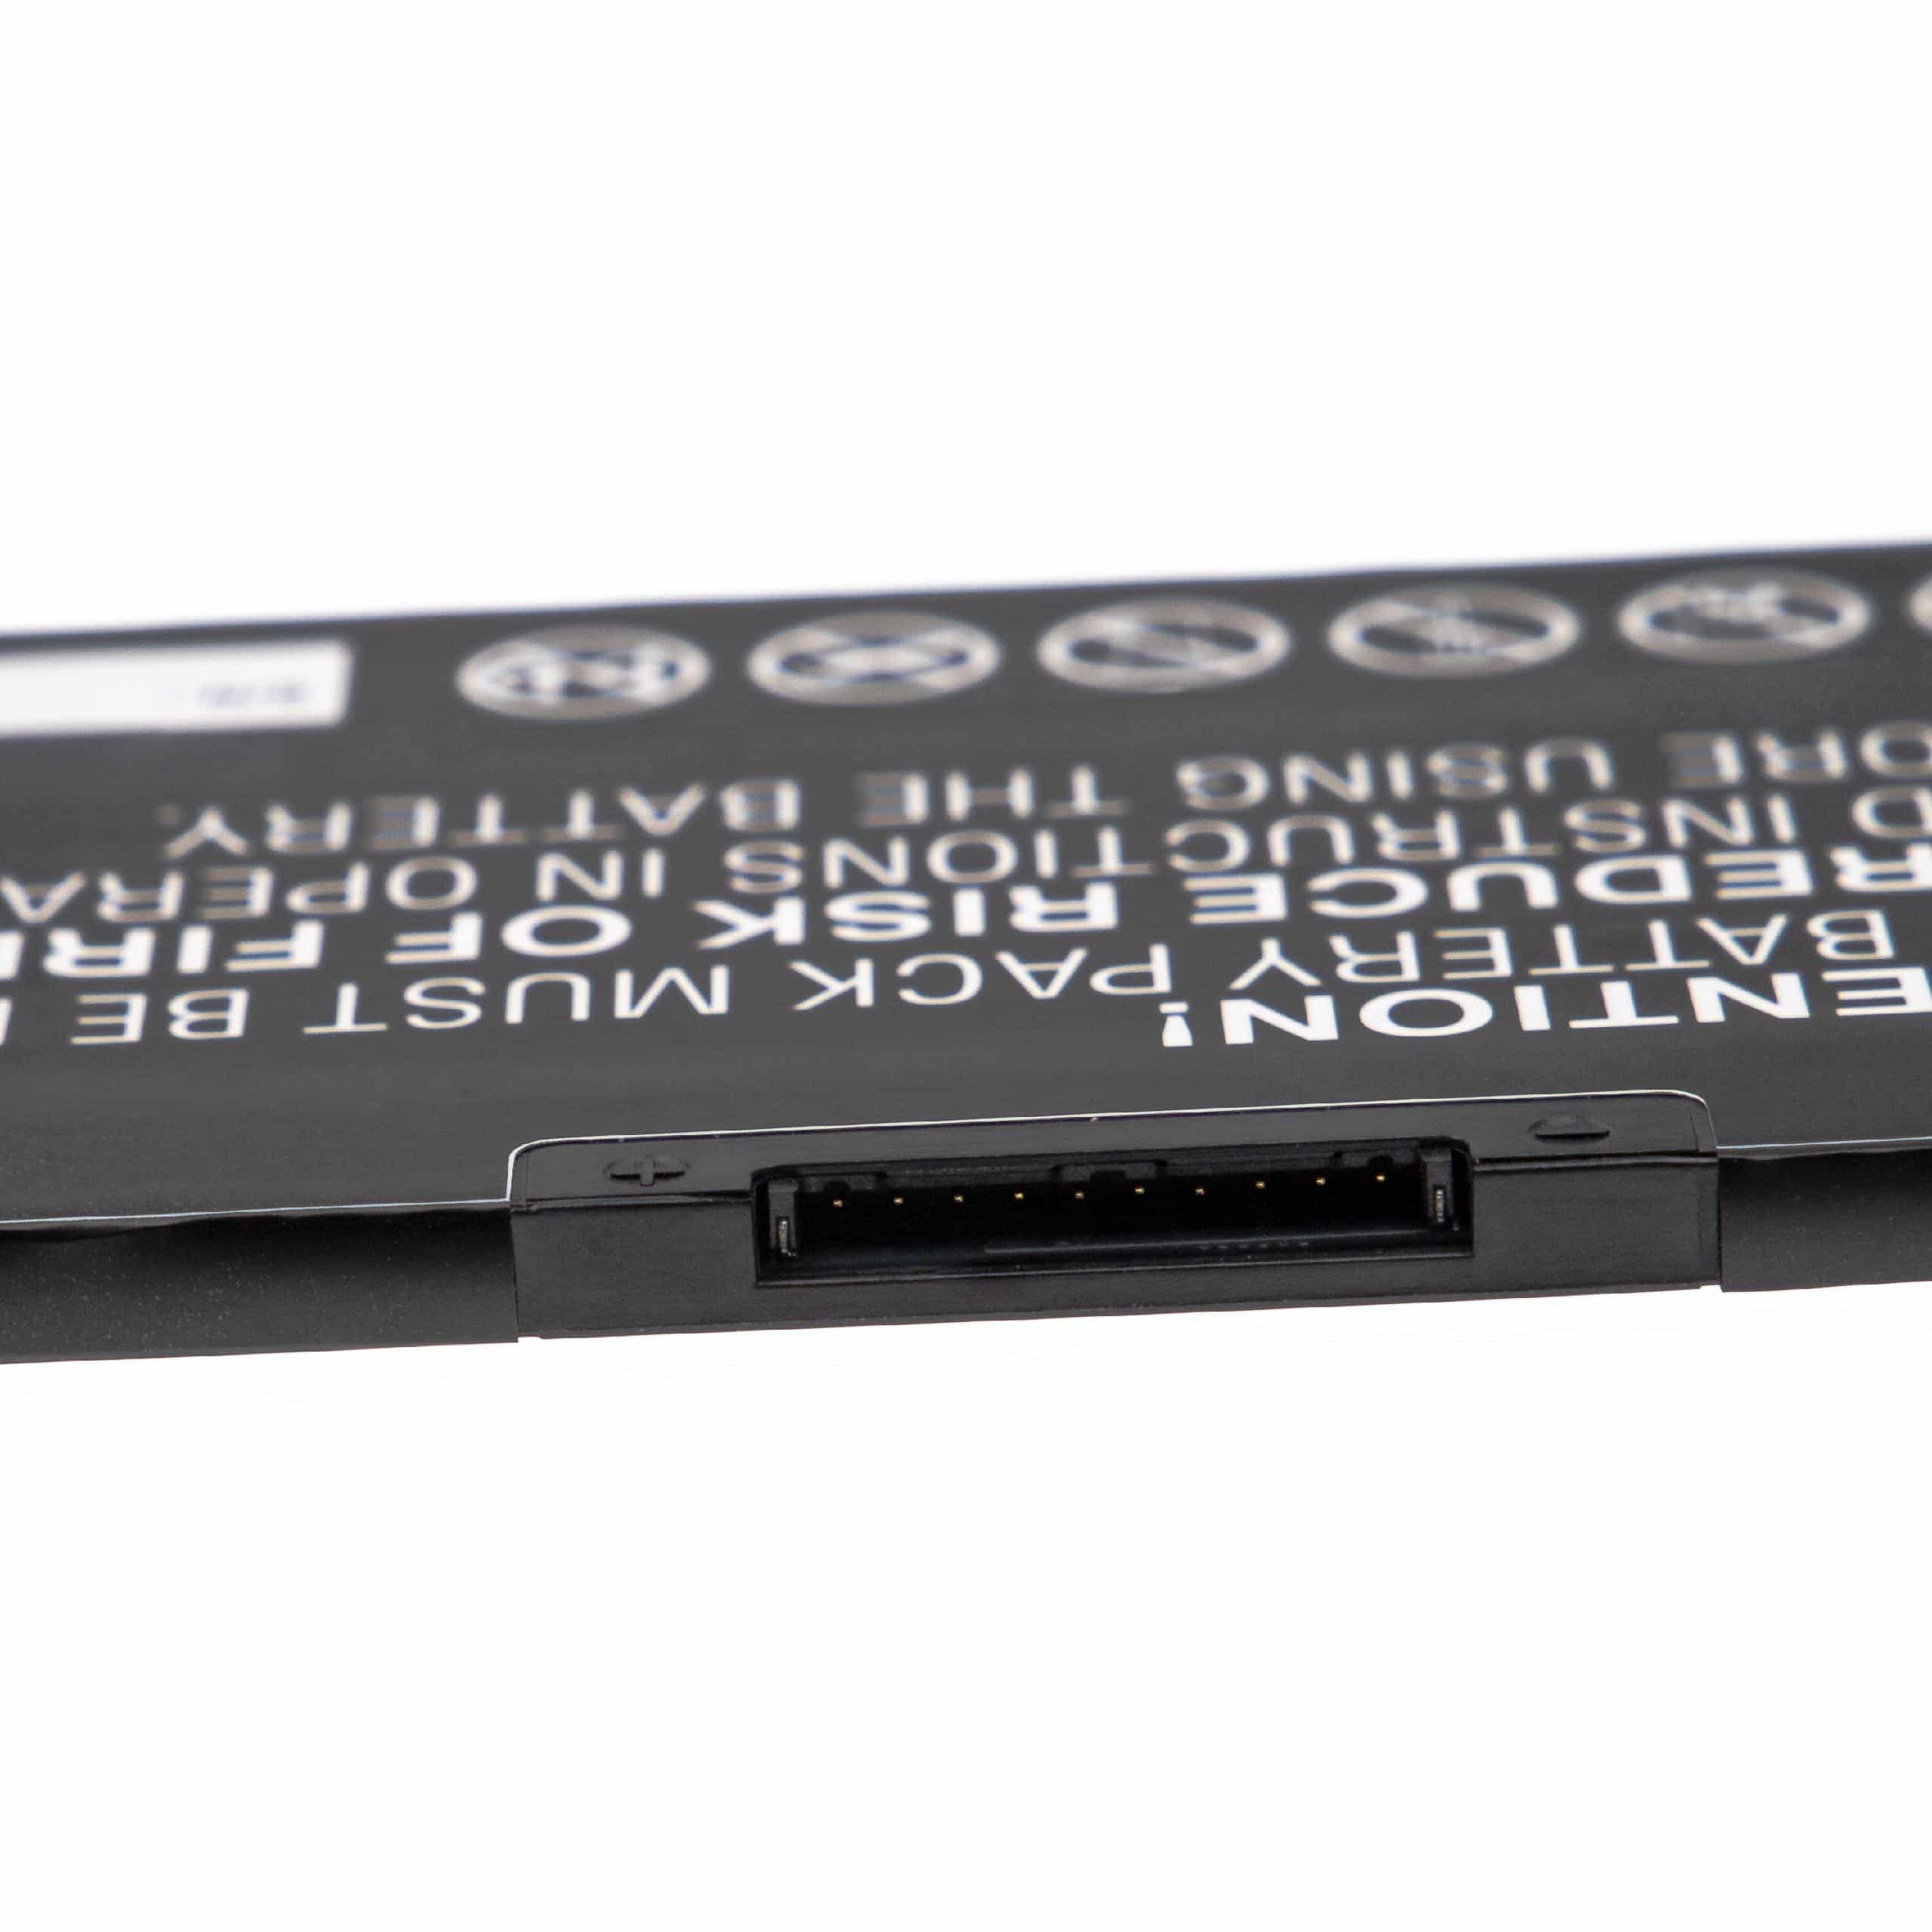 Batterie remplace Dell 0JJRRD, 4ICP6/55/74, 72WGV, JJRRD pour ordinateur portable - 4150mAh 15,2V Li-polymère